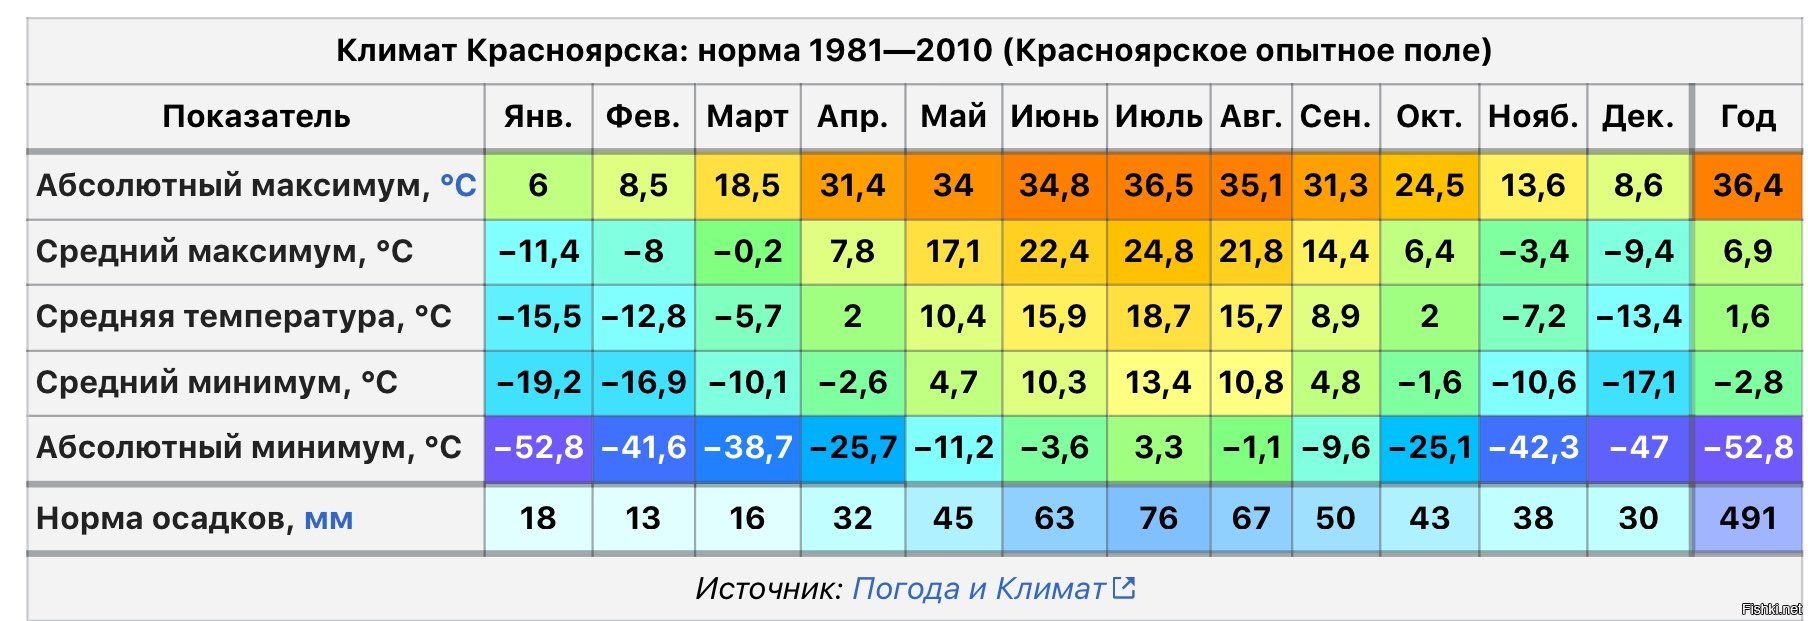 Средняя годовая температура в Калининграде